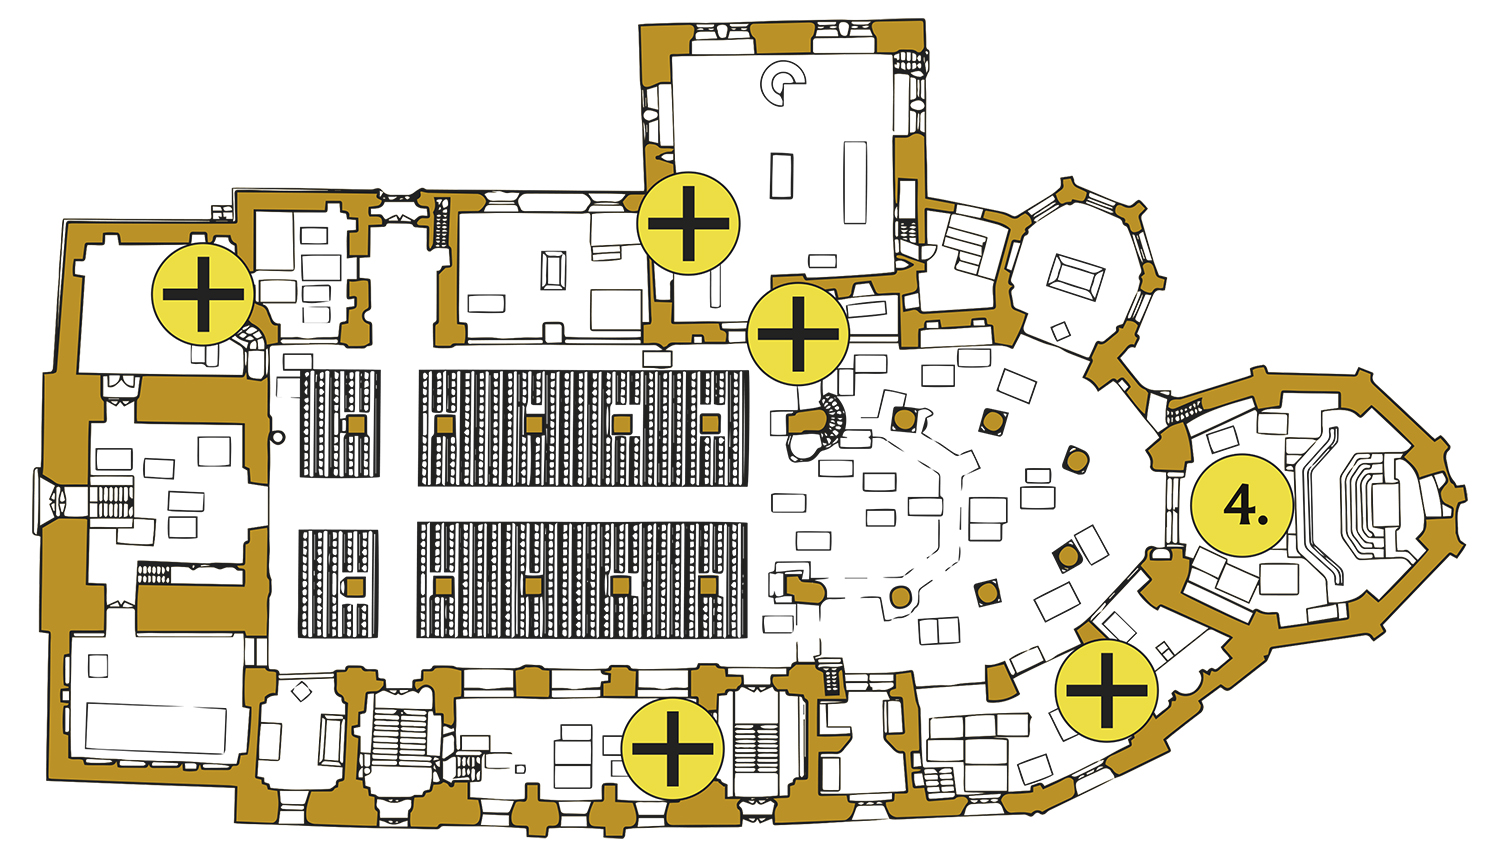 Tuomiokirkon pohjakartta, jossa keltaisilla palluroilla merkitty käytössä olevien alttarien paikat